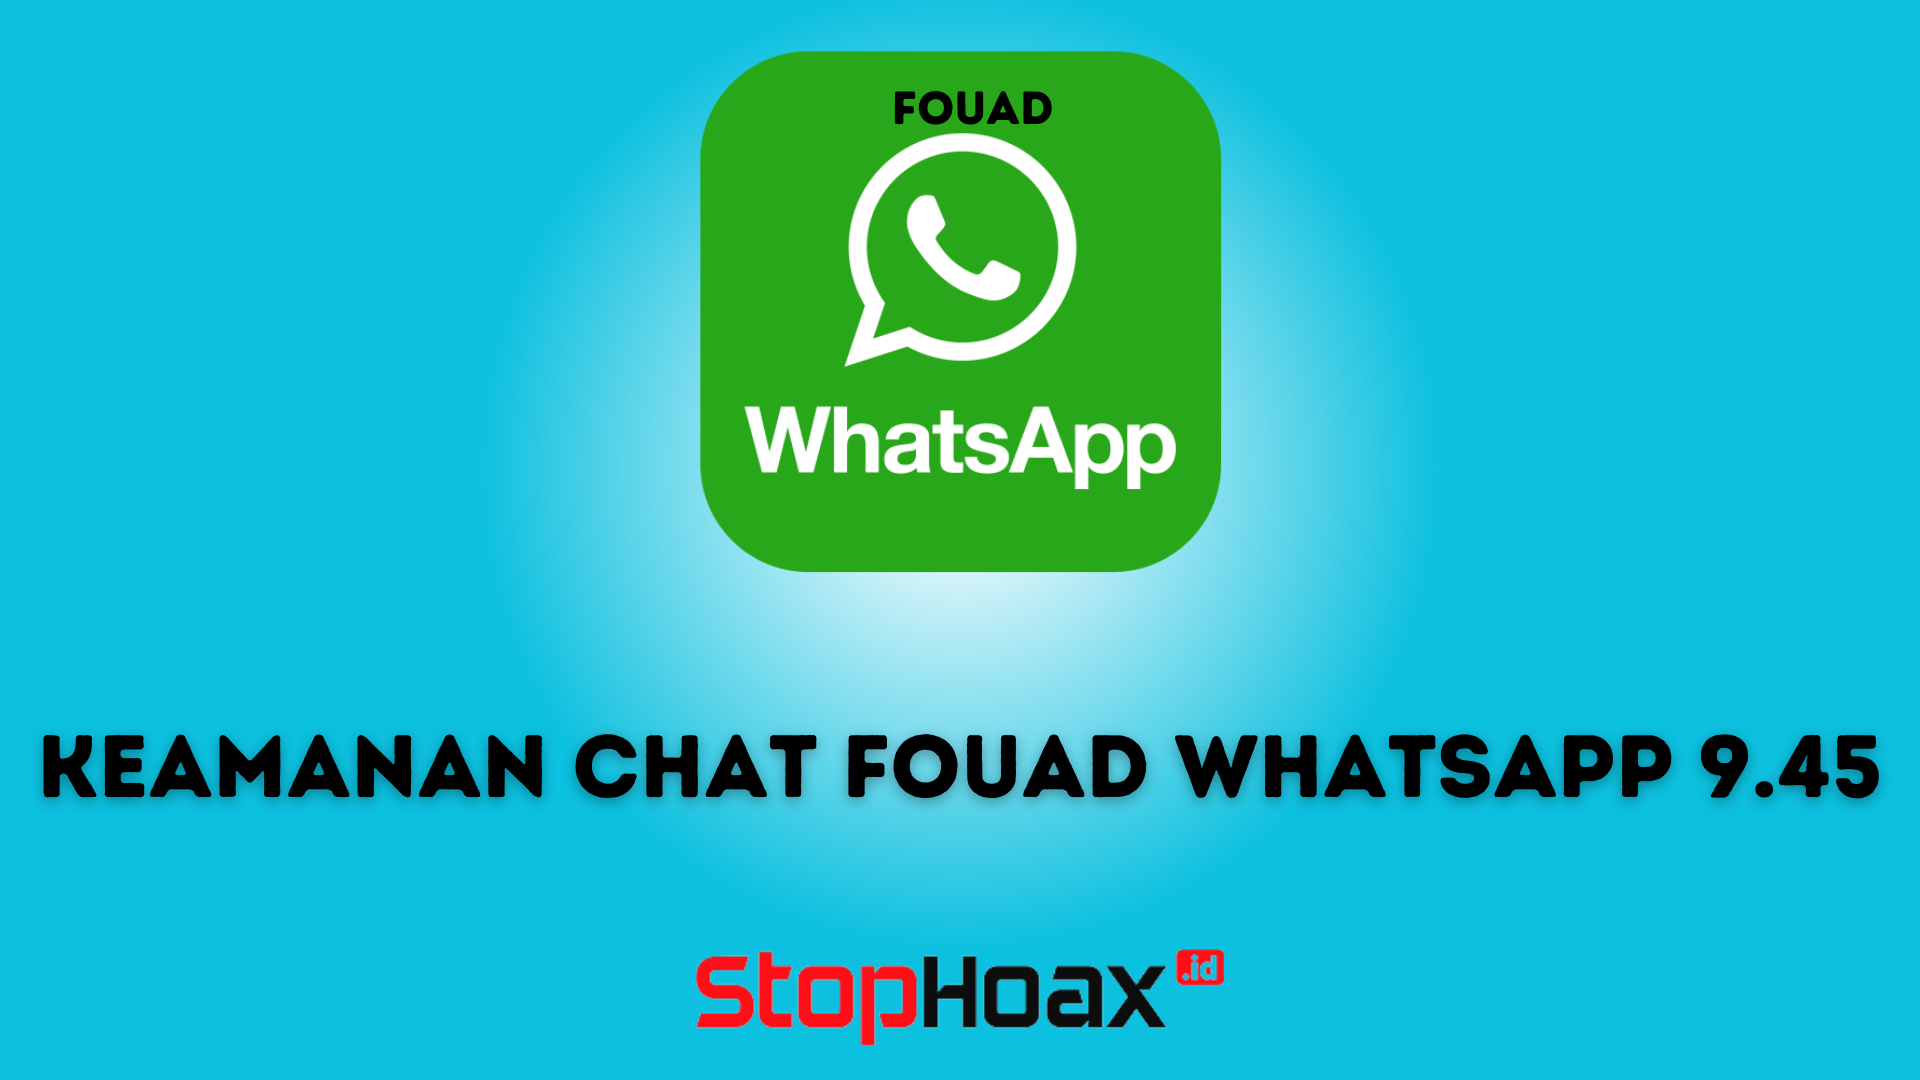 Meningkatkan Keamanan Chat dengan Fouad WhatsApp 9.45 Anti-Ban